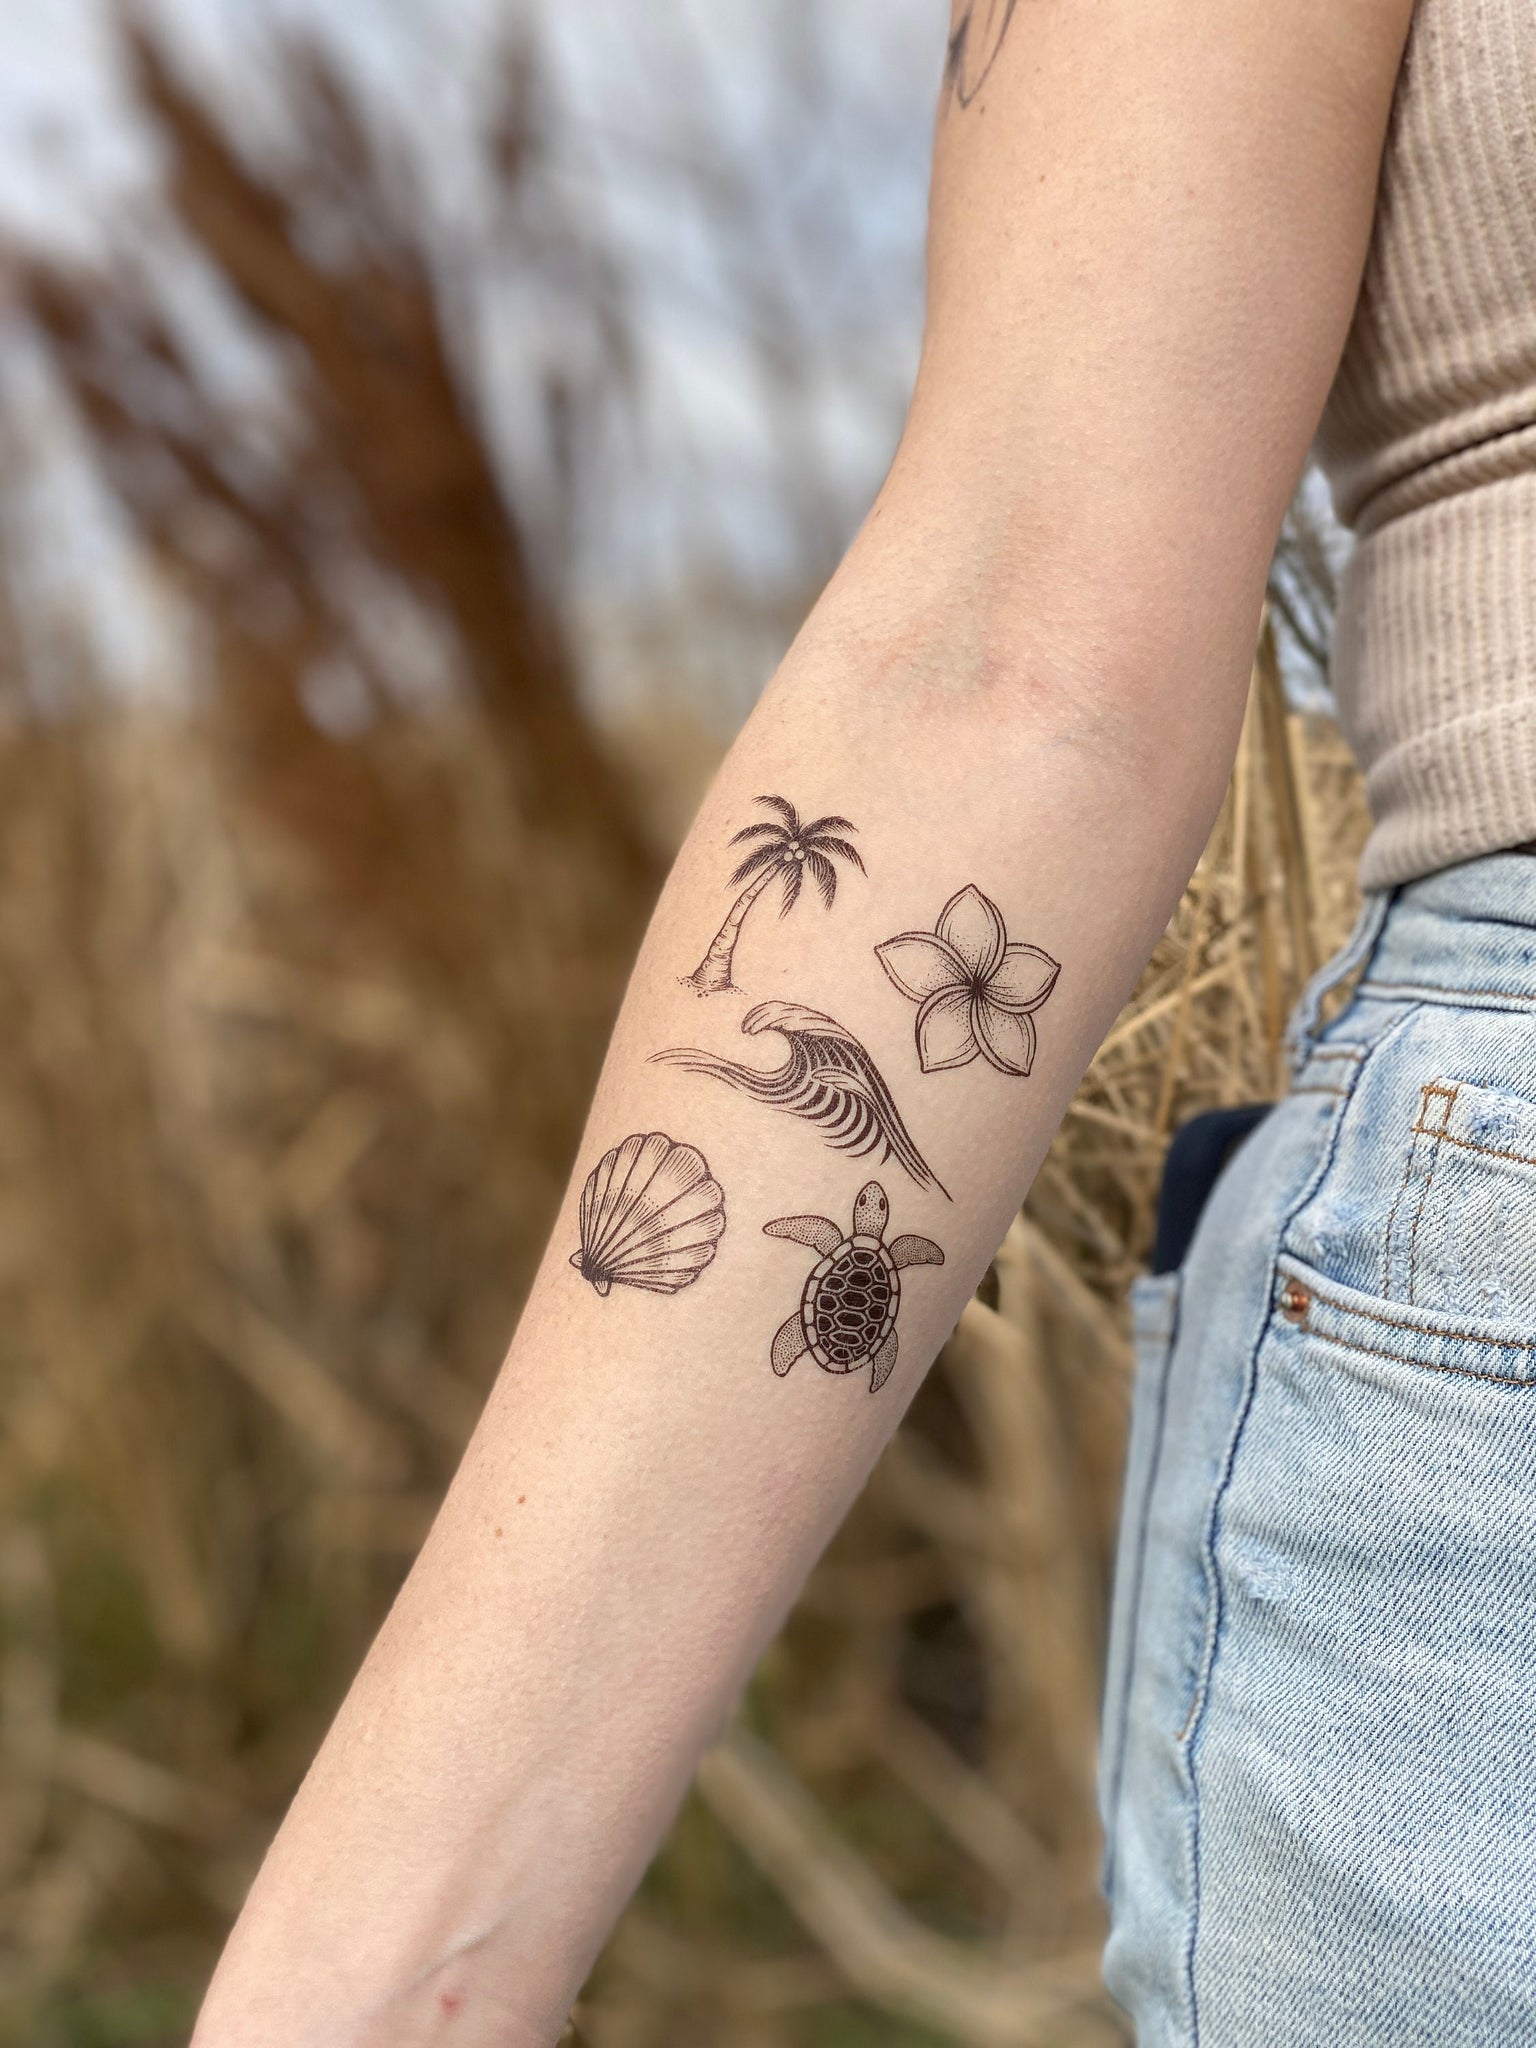 The Story of my New Tattoo — Andrea Rangel